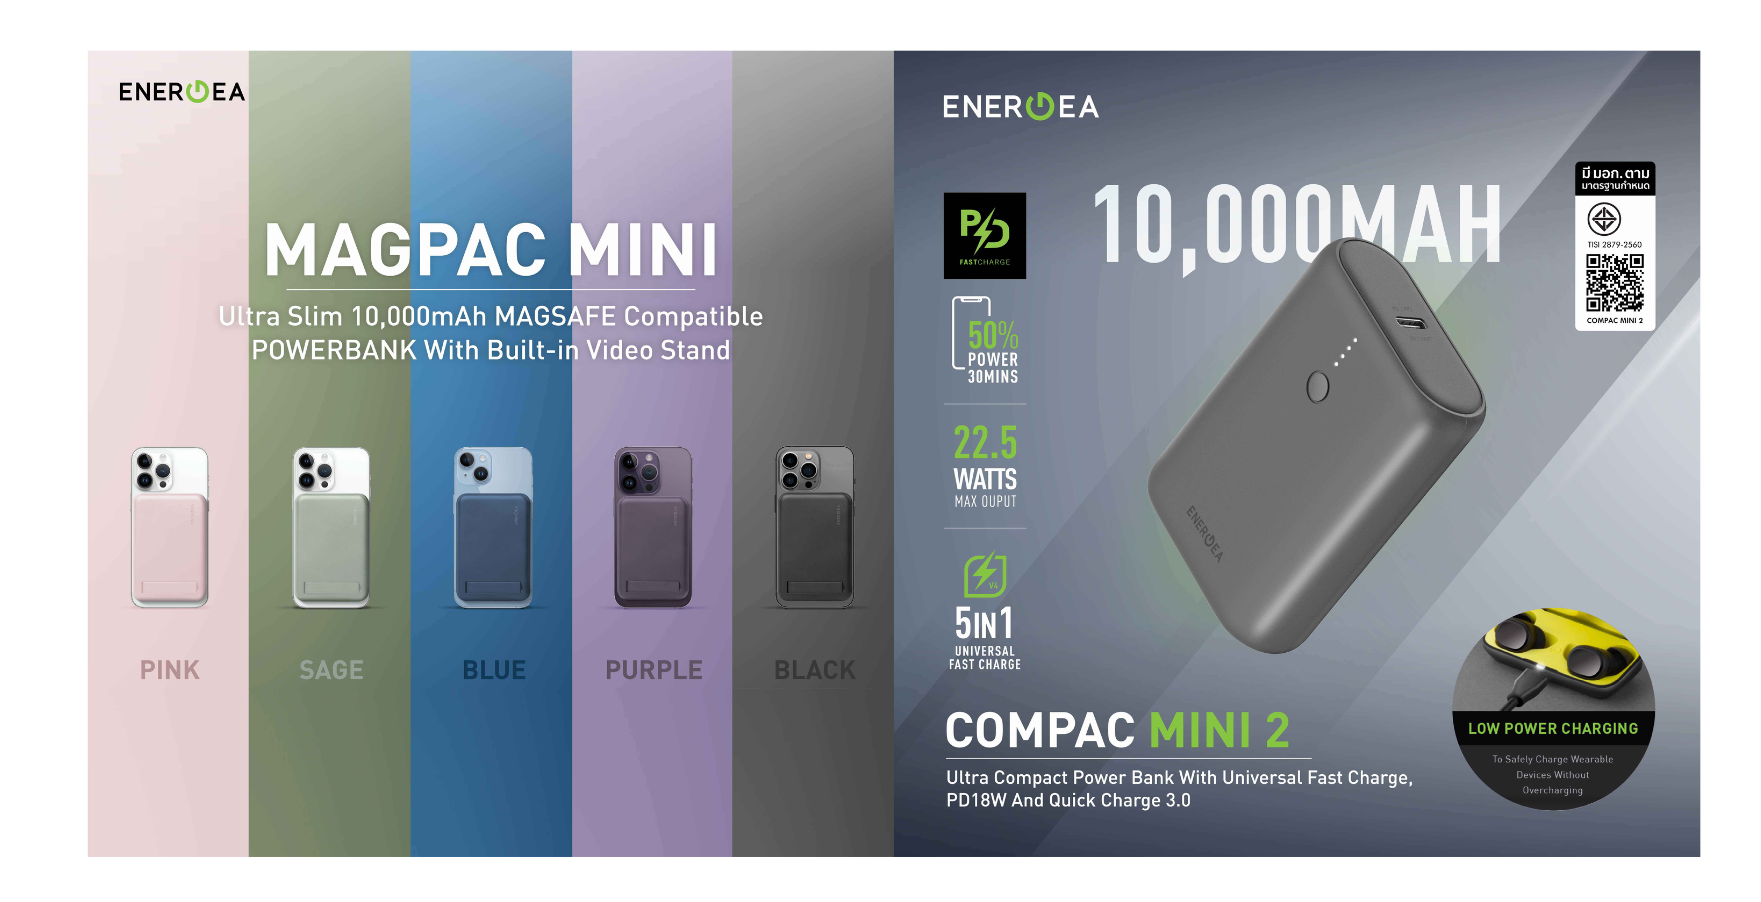 อาร์ทีบีฯ ส่งแบตเตอรี่สำรอง 2 รุ่นใหม่จากแบรนด์ Energea ComPac Mini 2 และ MagPac Mini